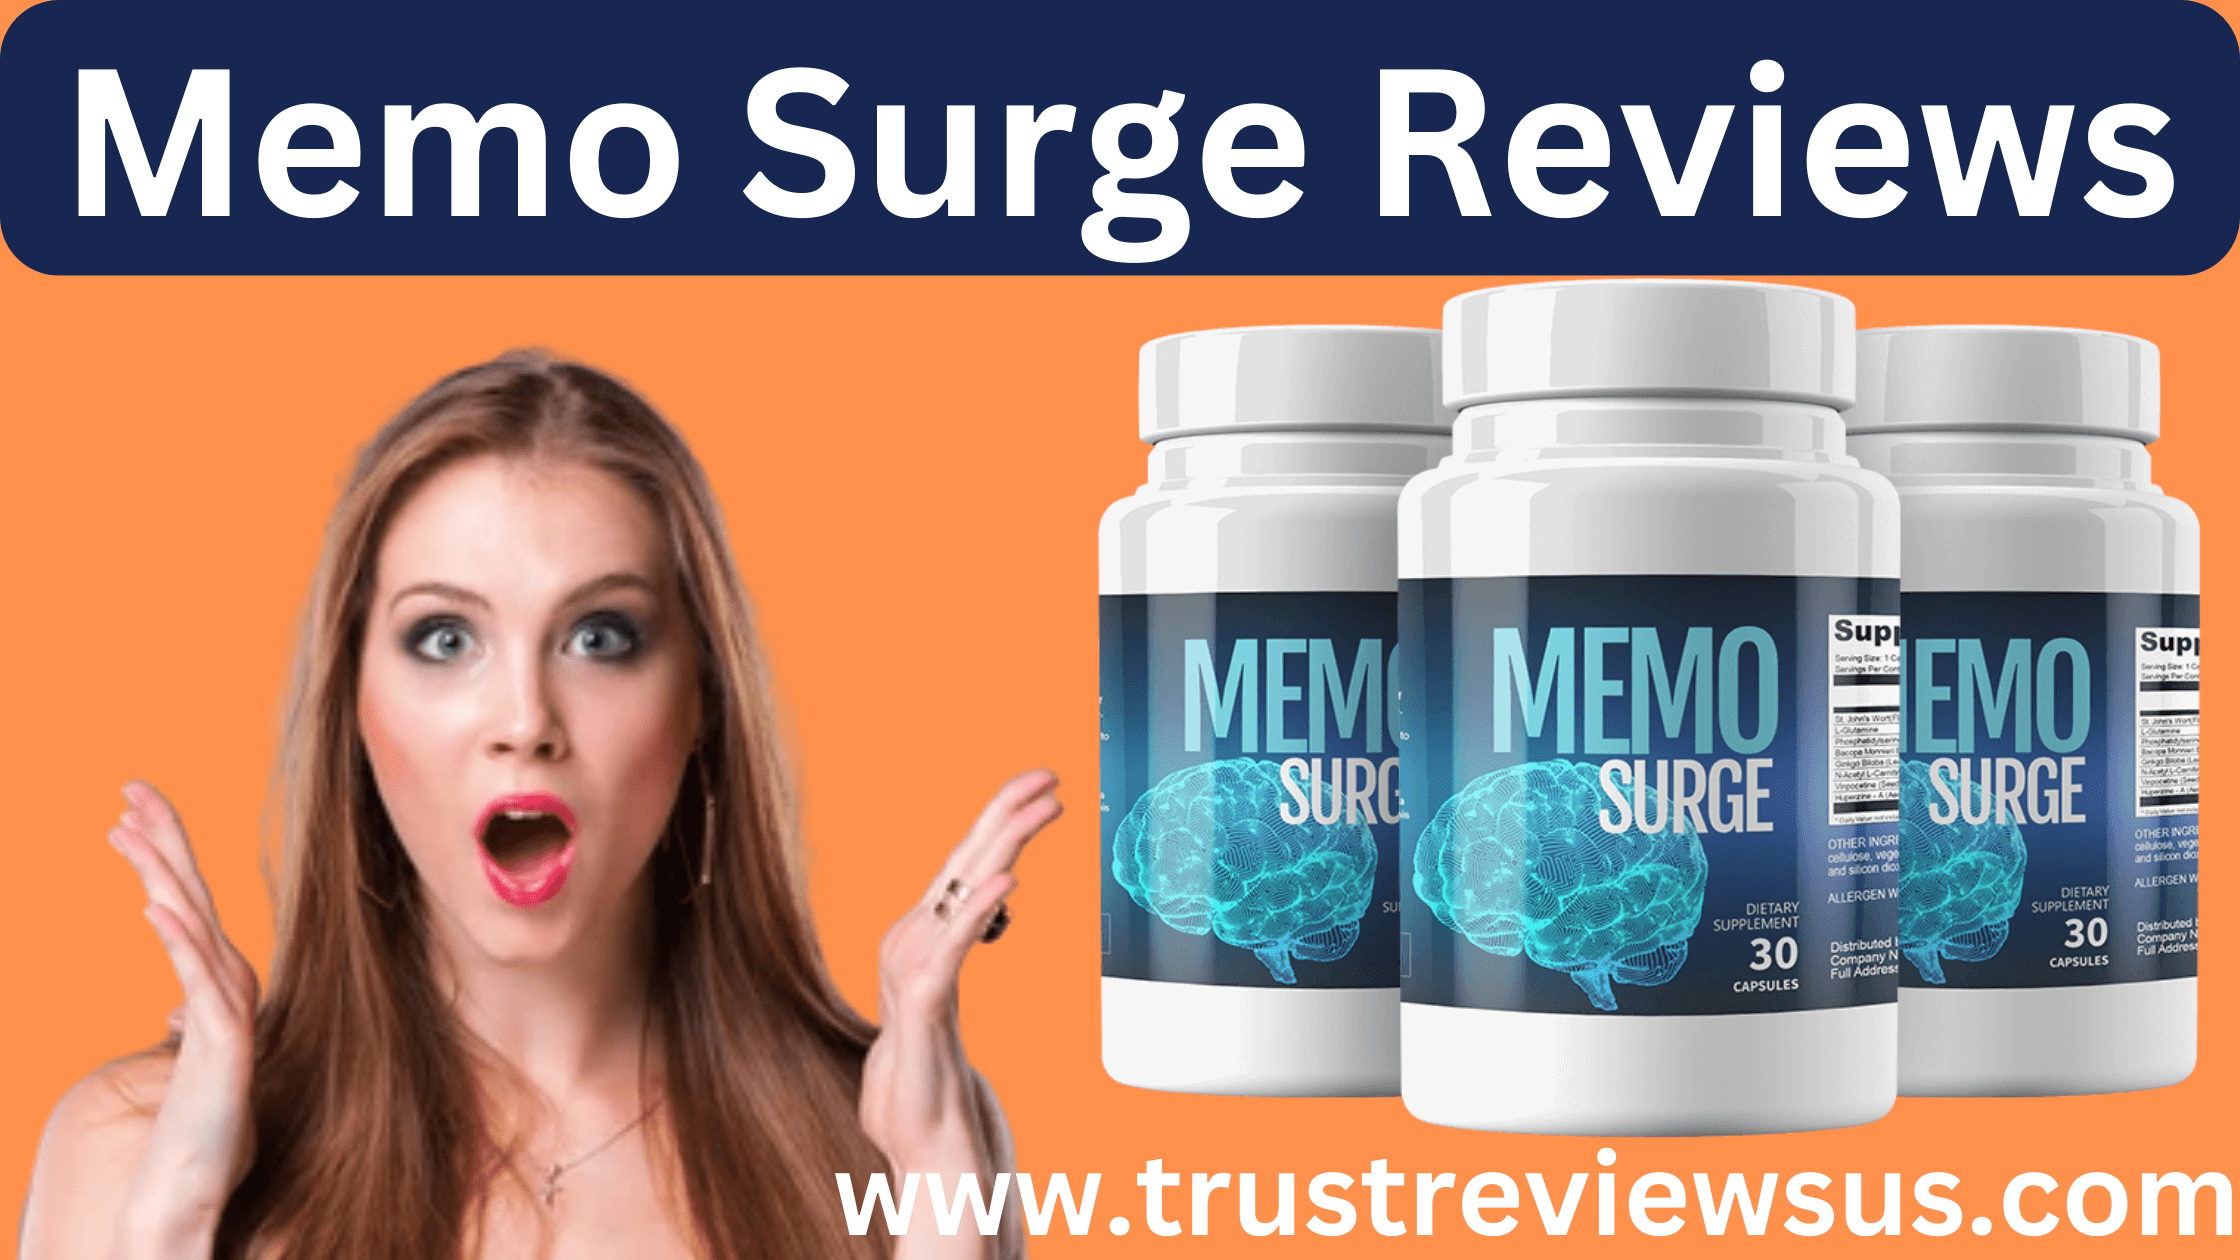 Memo Surge Reviews